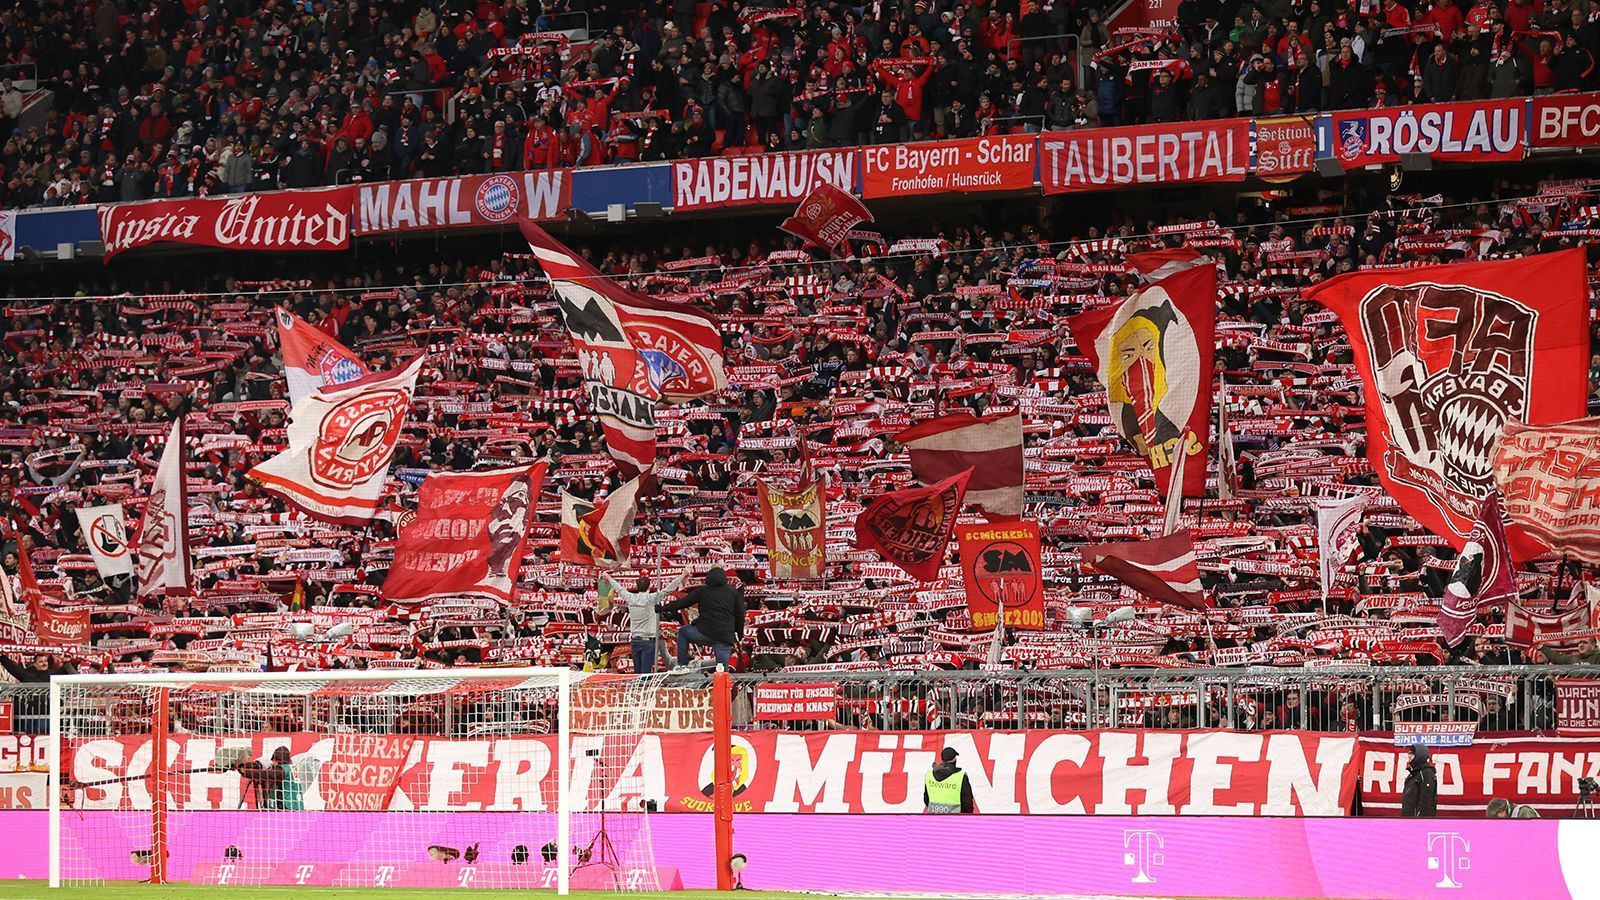 <strong>FC Bayern und Co.: Das sind die Vereine mit den meisten Mitgliedern</strong><br>
                Der FC Bayern darf sich über 300.000 Mitglieder freuen. Welche Vereine sind noch unter den mitgliederstärksten Fußball-Klubs zu finden? ran zeigt die Top-12 im Überblick. Gleich mehre deutsche Vereine reihen sich ein.